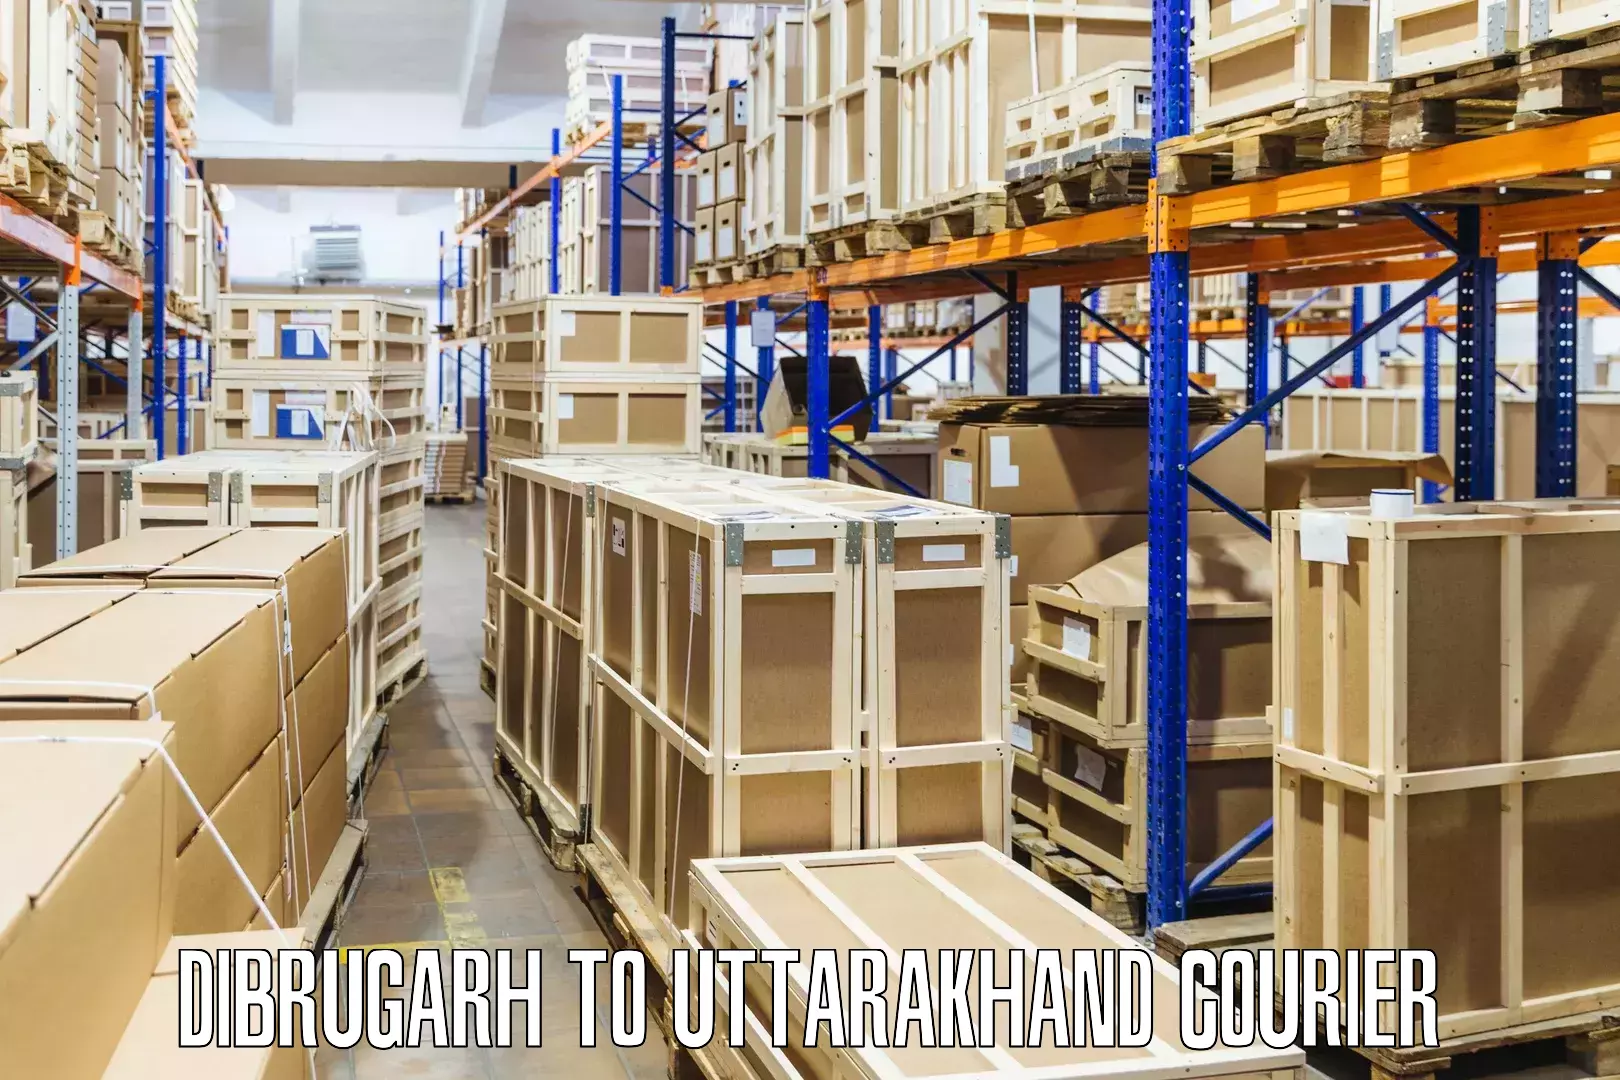 Comprehensive logistics solutions Dibrugarh to Bageshwar